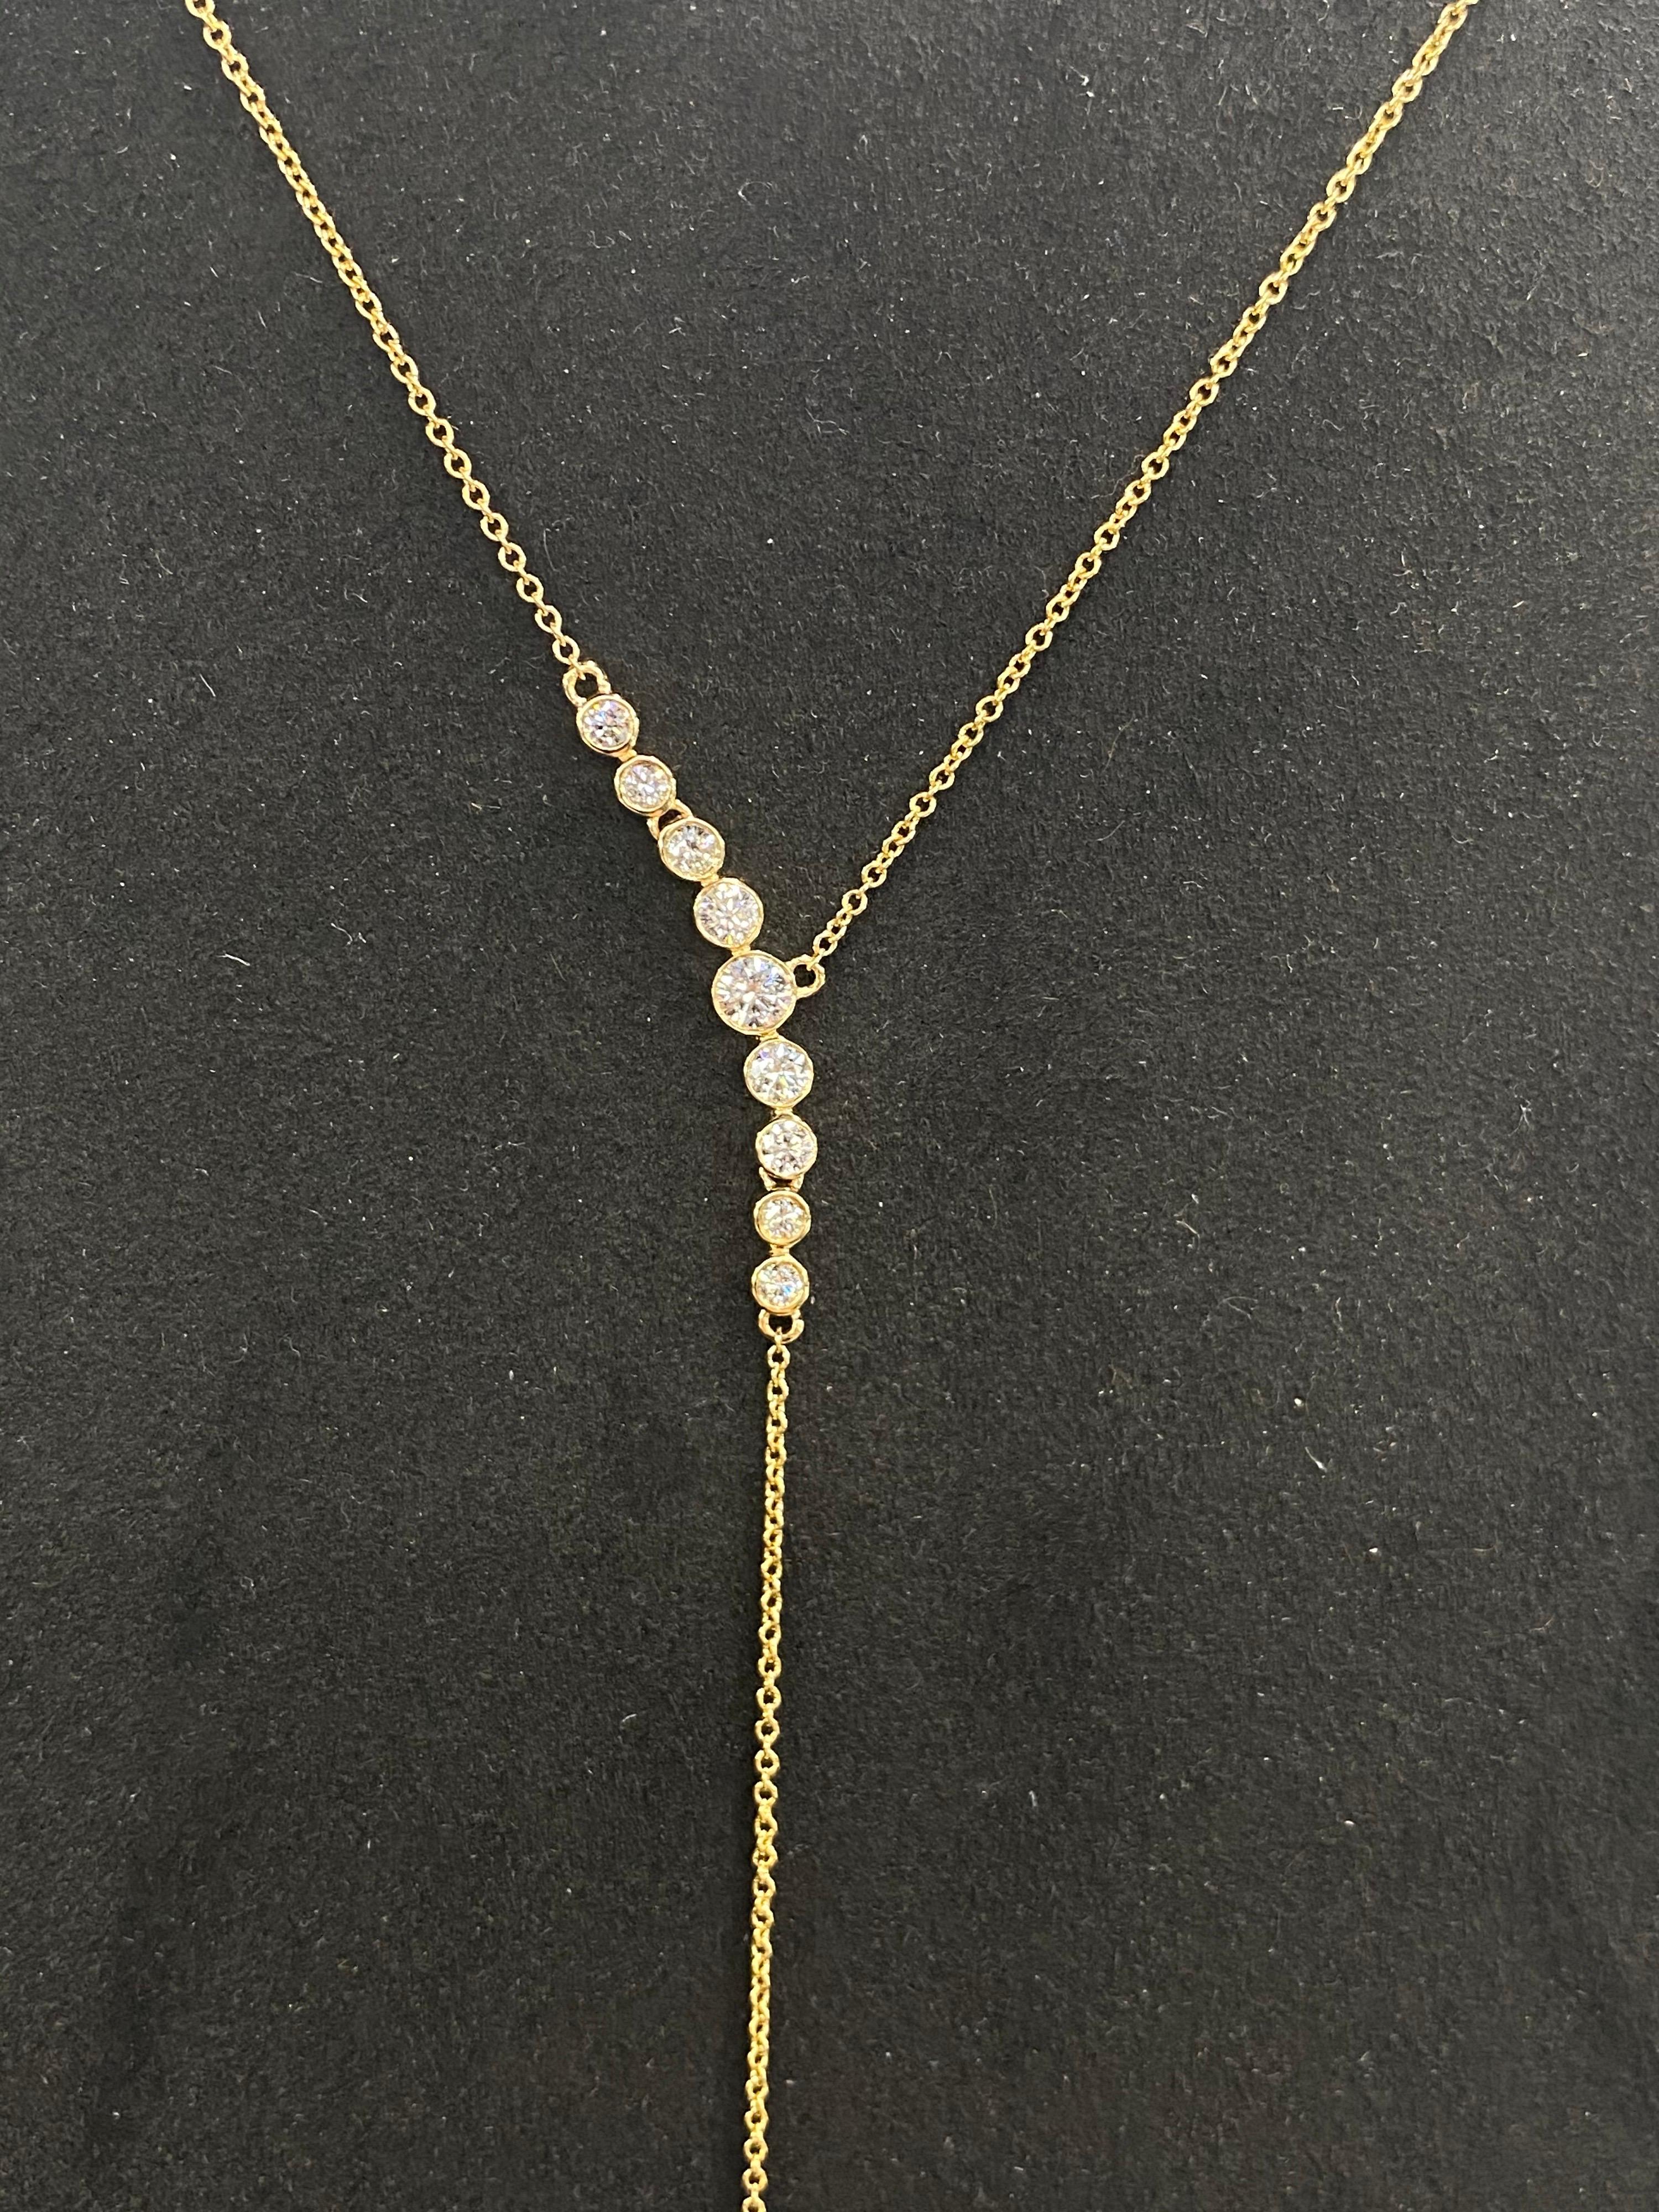 collier lariat en or jaune 18 carats comprenant 8 brillants ronds pesant 0.31 carats avec une goutte de perle des mers du sud mesurant 13-14 mm et deux diamants ronds pesant 0.20 carats.
Couleur G-H
Clarity SI

La perle peut être remplacée par une